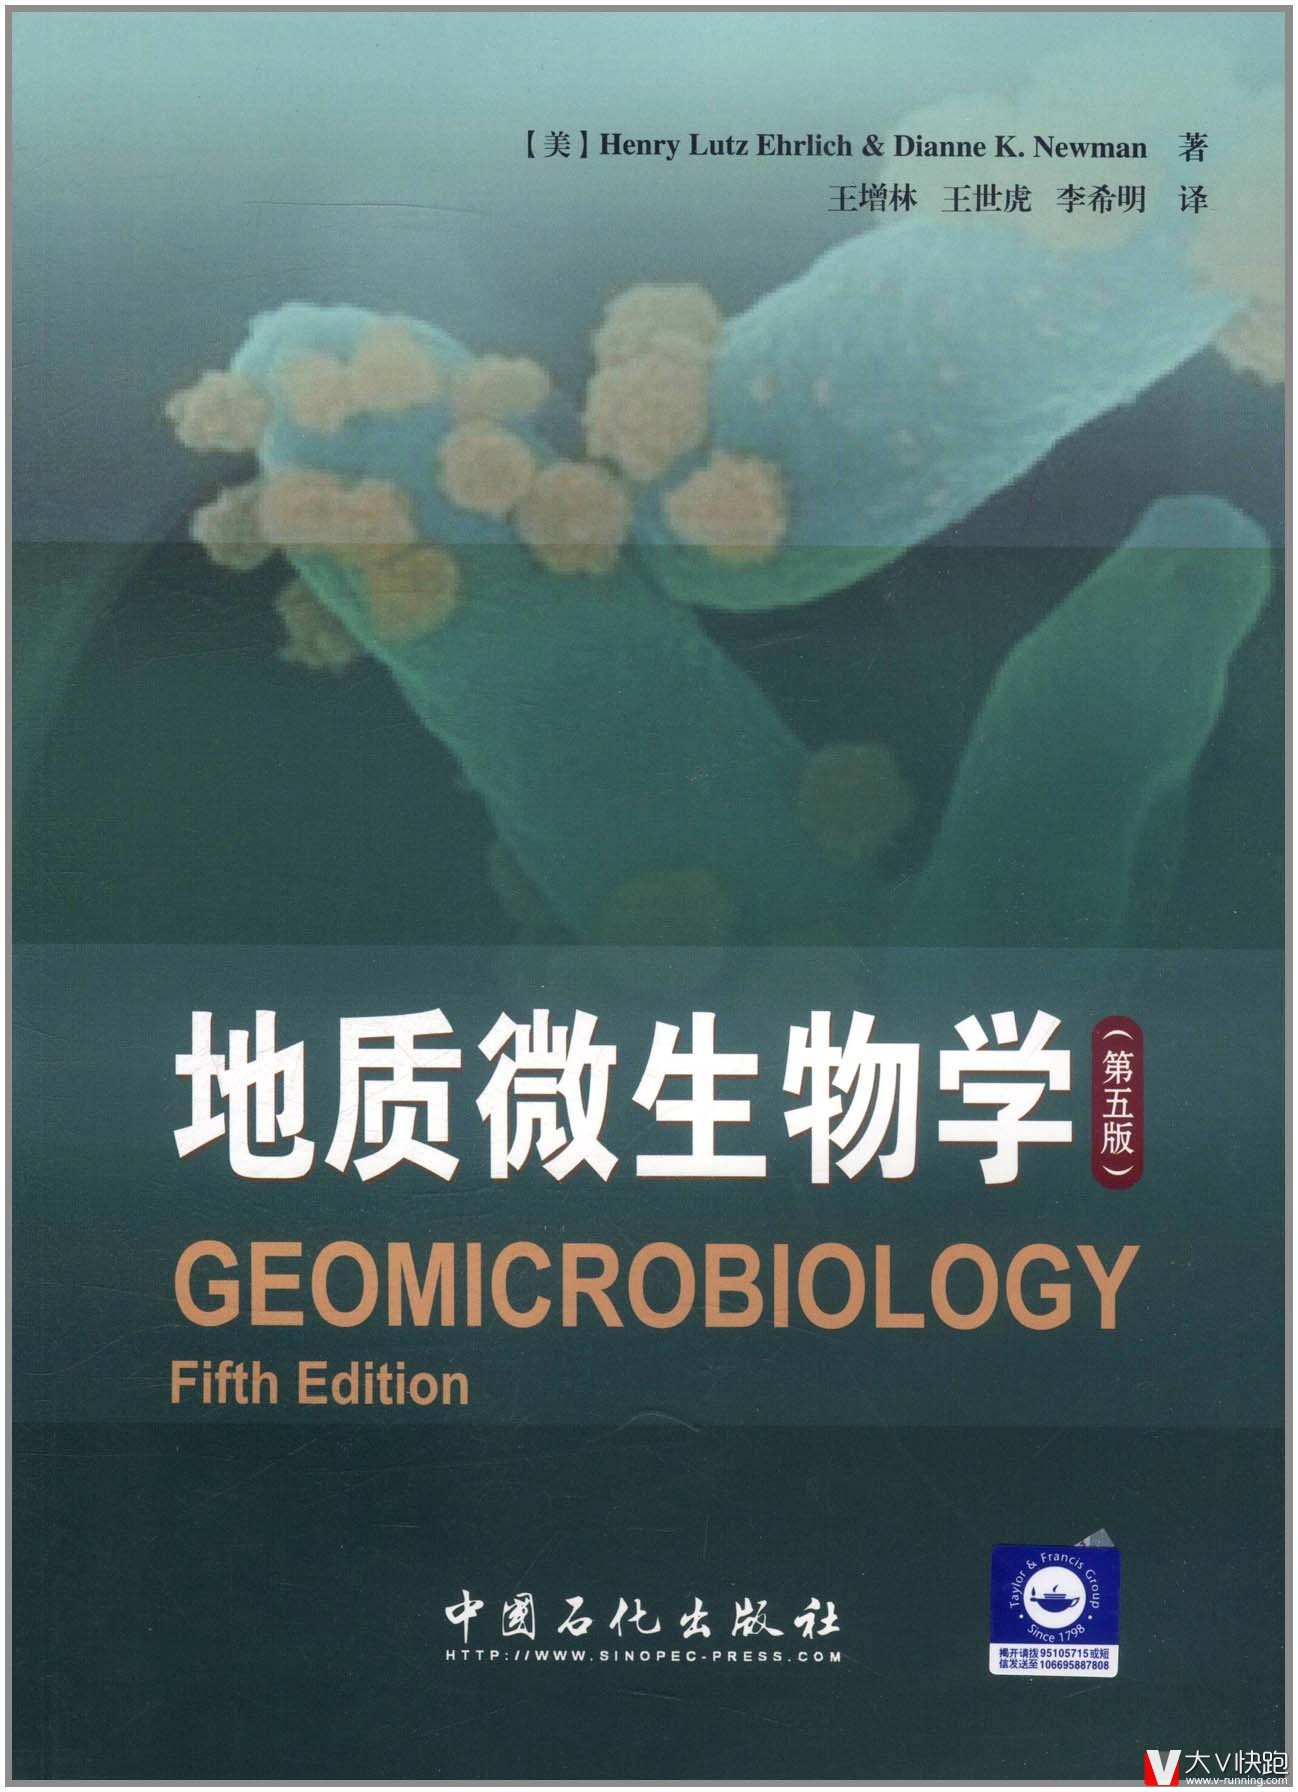 地质微生物学(第五版)美埃利希(HenryLutzEhrlich)、DianneK.Newman(作者)王增林、王世虎、李希明(译者)